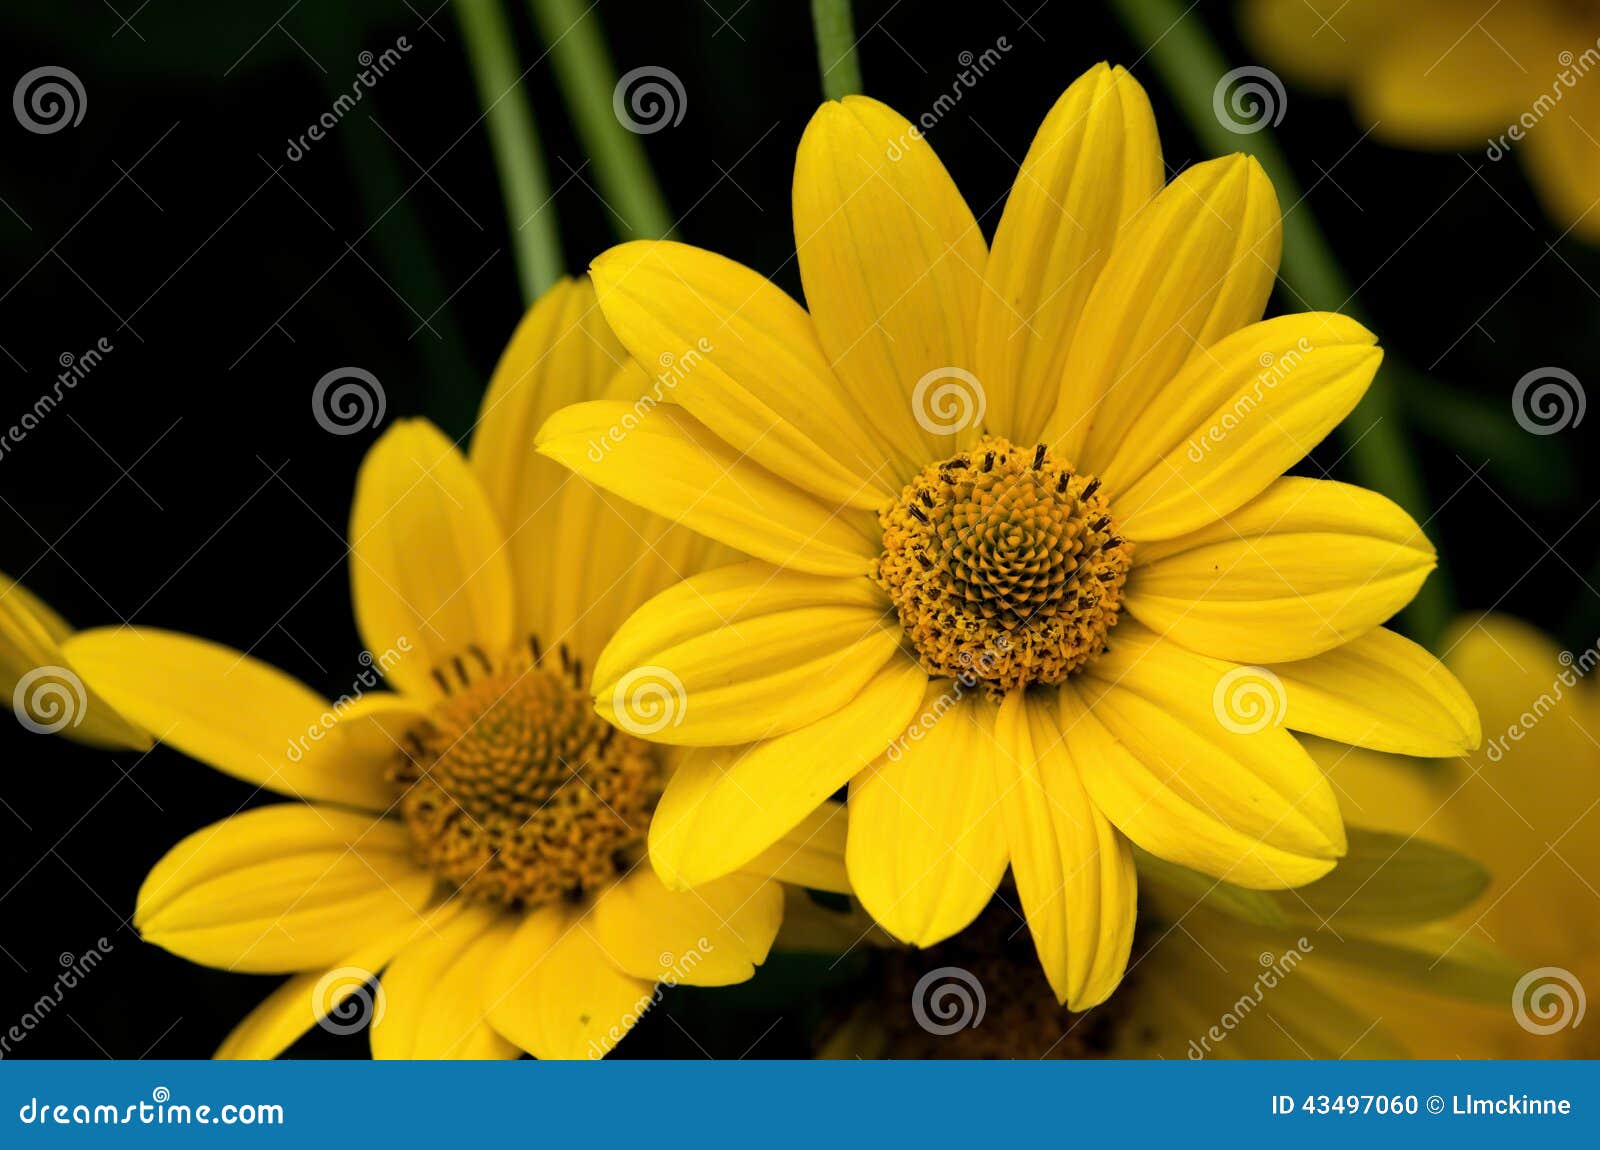 Girasol falso foto de archivo. Imagen de perenne, wildflower - 43497060